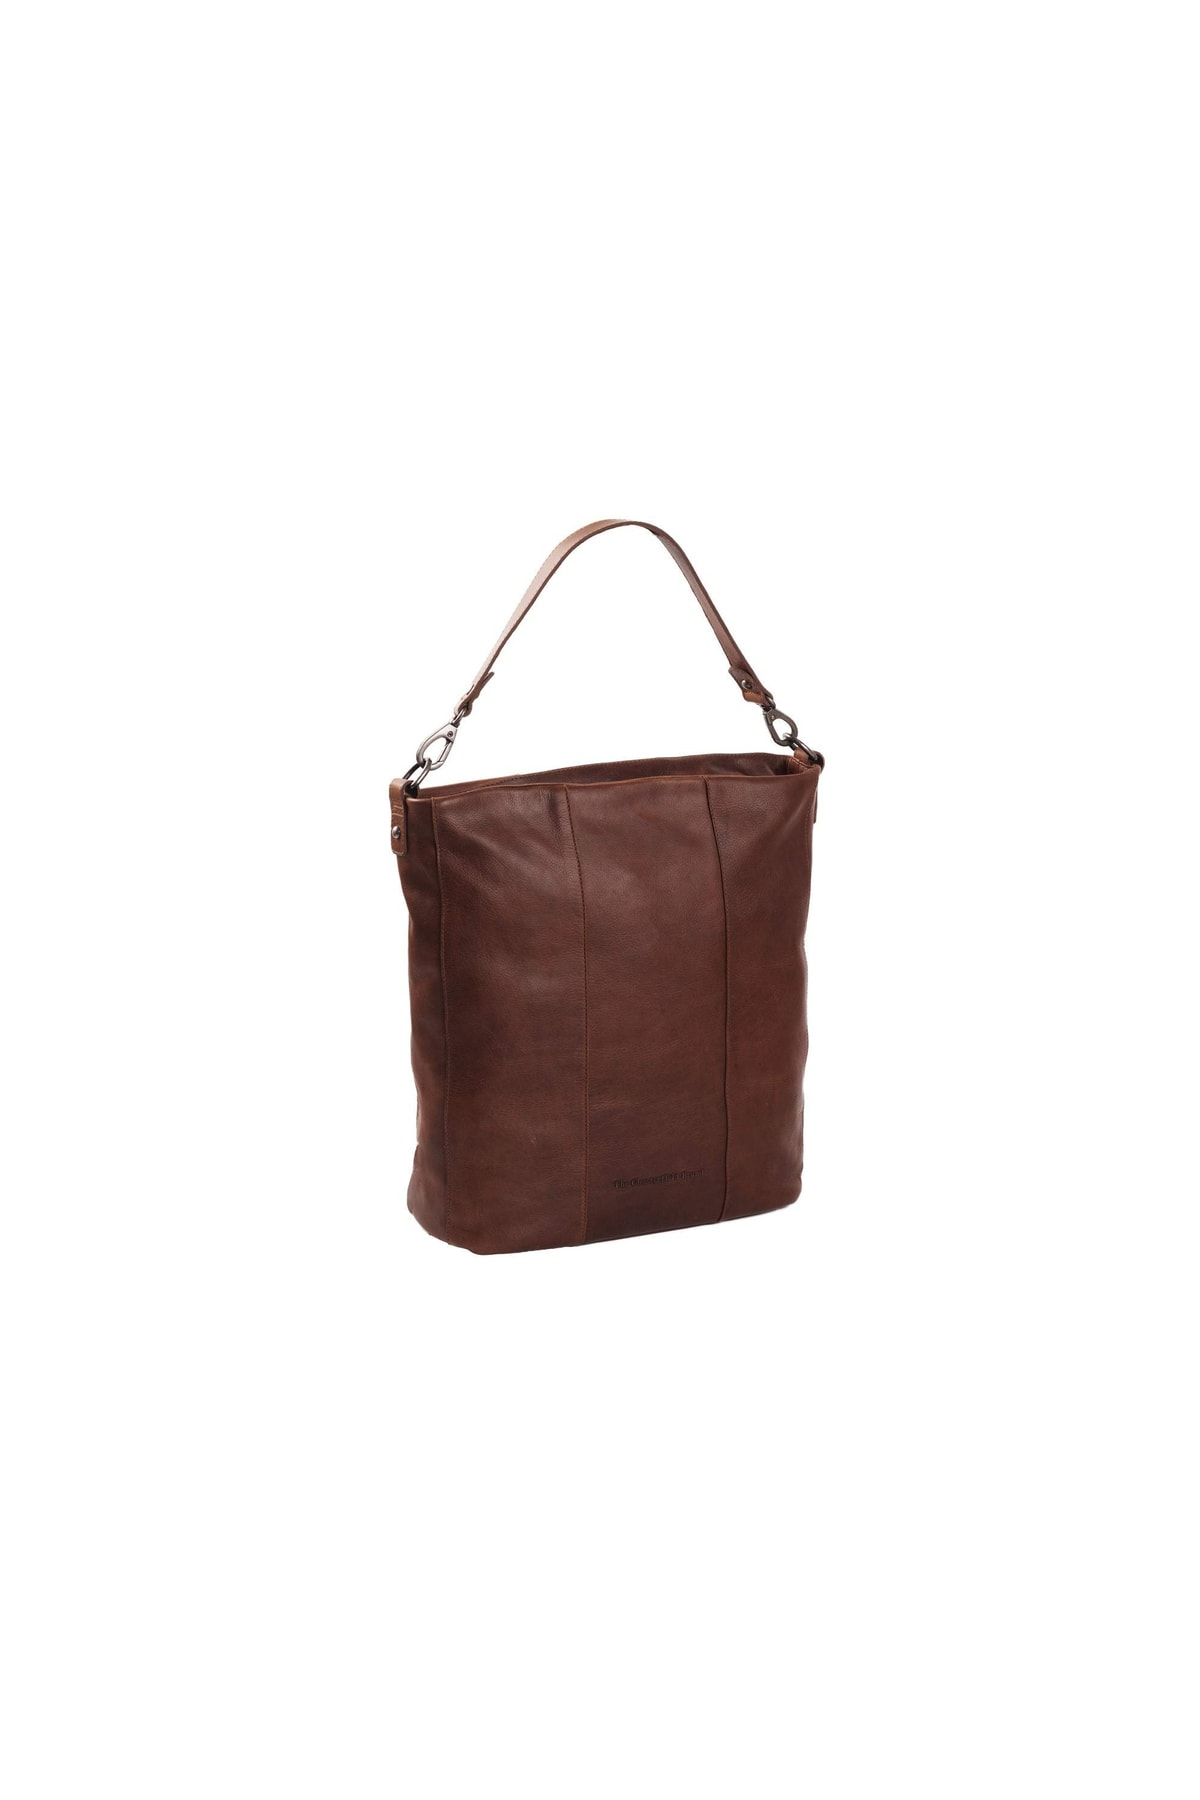 The Chesterfield Brand Handtasche Braun Strukturiert Fast ausverkauft